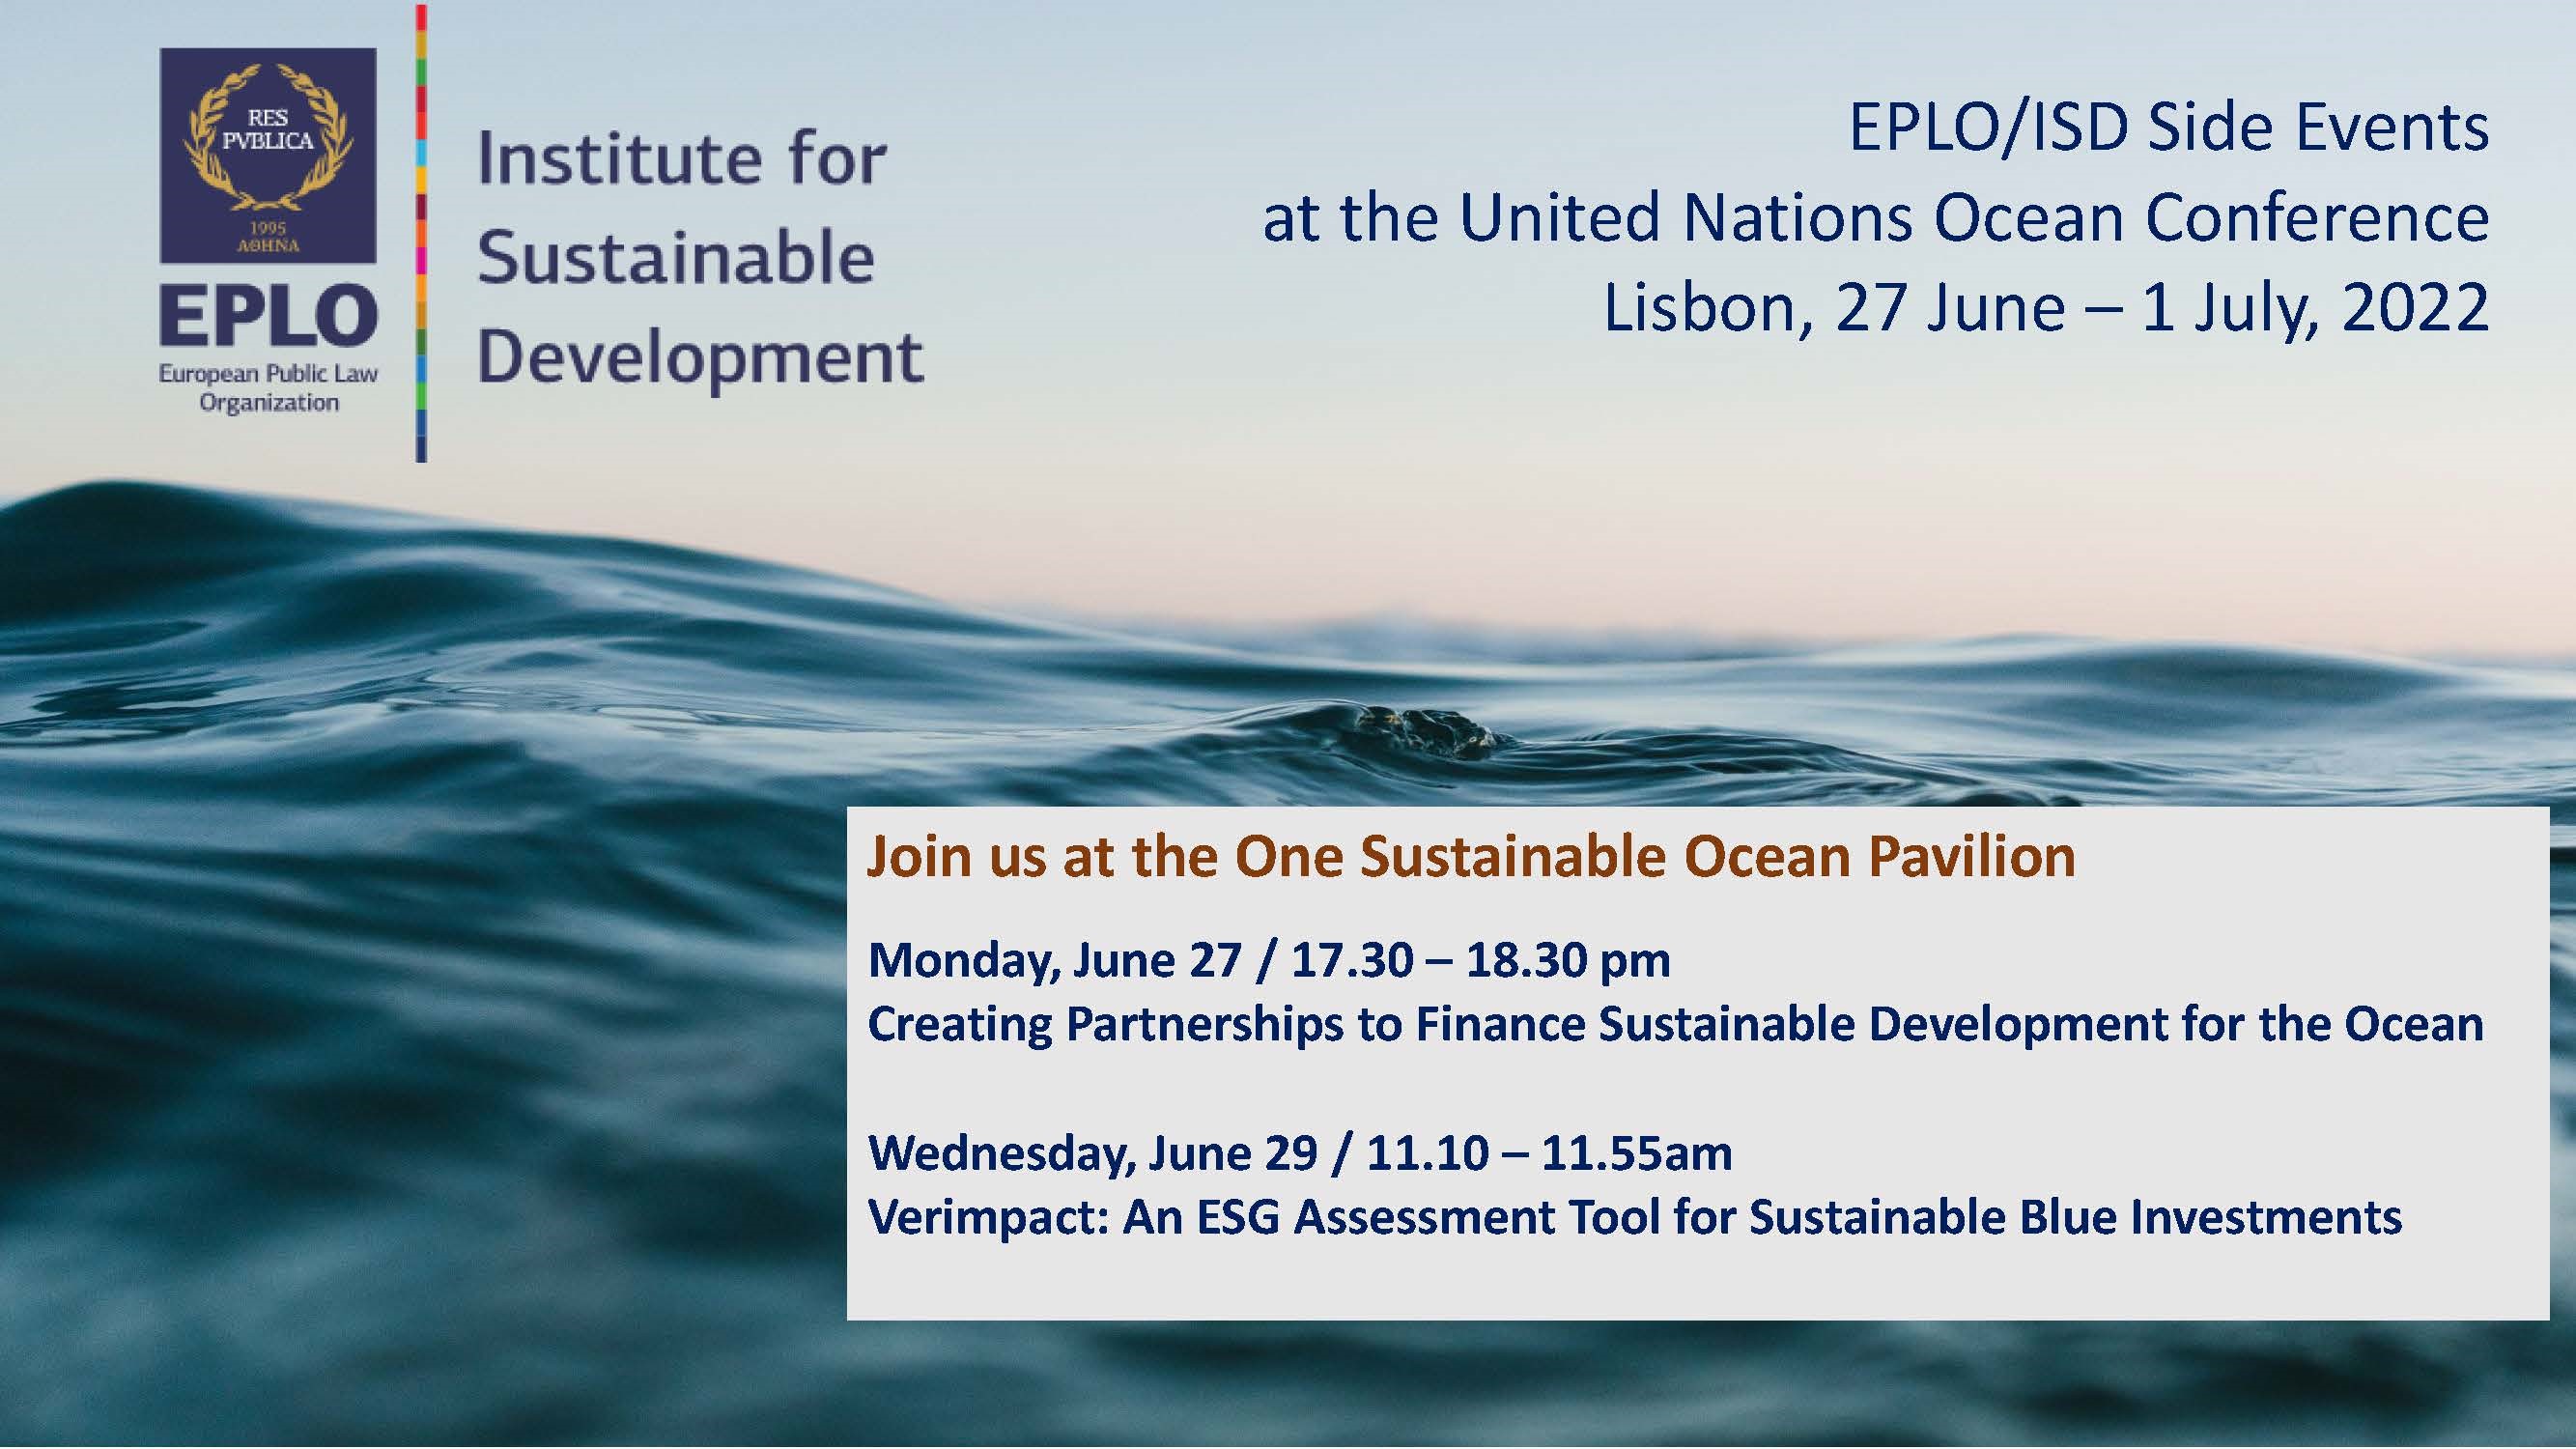 Εκδηλώσεις του Ινστιτούτου για τη Βιώσιμη Ανάπτυξη  του Ευρωπαϊκού Οργανισμού Δημοσίου Δικαίου στη Διάσκεψη των Ηνωμένων Εθνών για τους Ωκεανούς στη Λισαβώνα 27 Ιουνίου – 1 Ιουλίου 2022